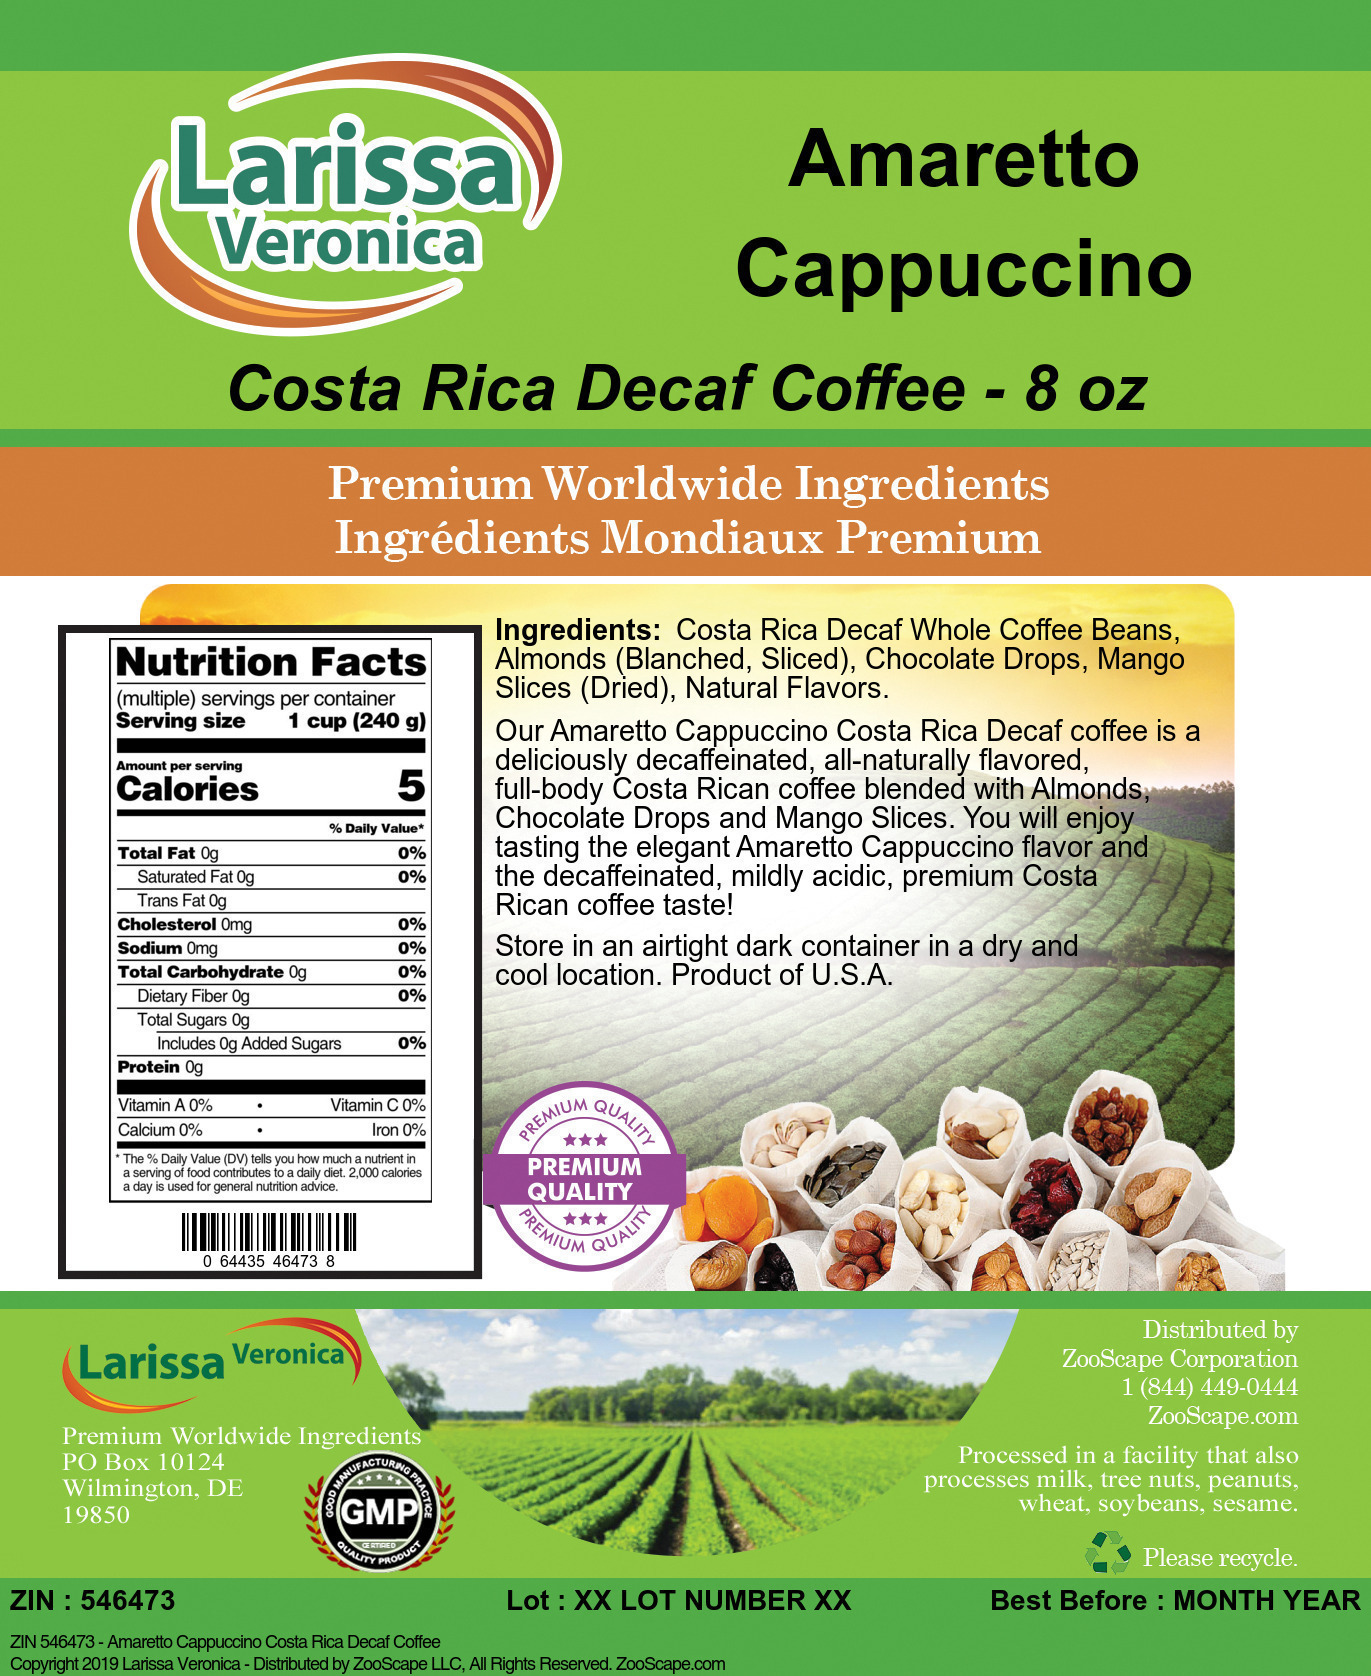 Amaretto Cappuccino Costa Rica Decaf Coffee - Label